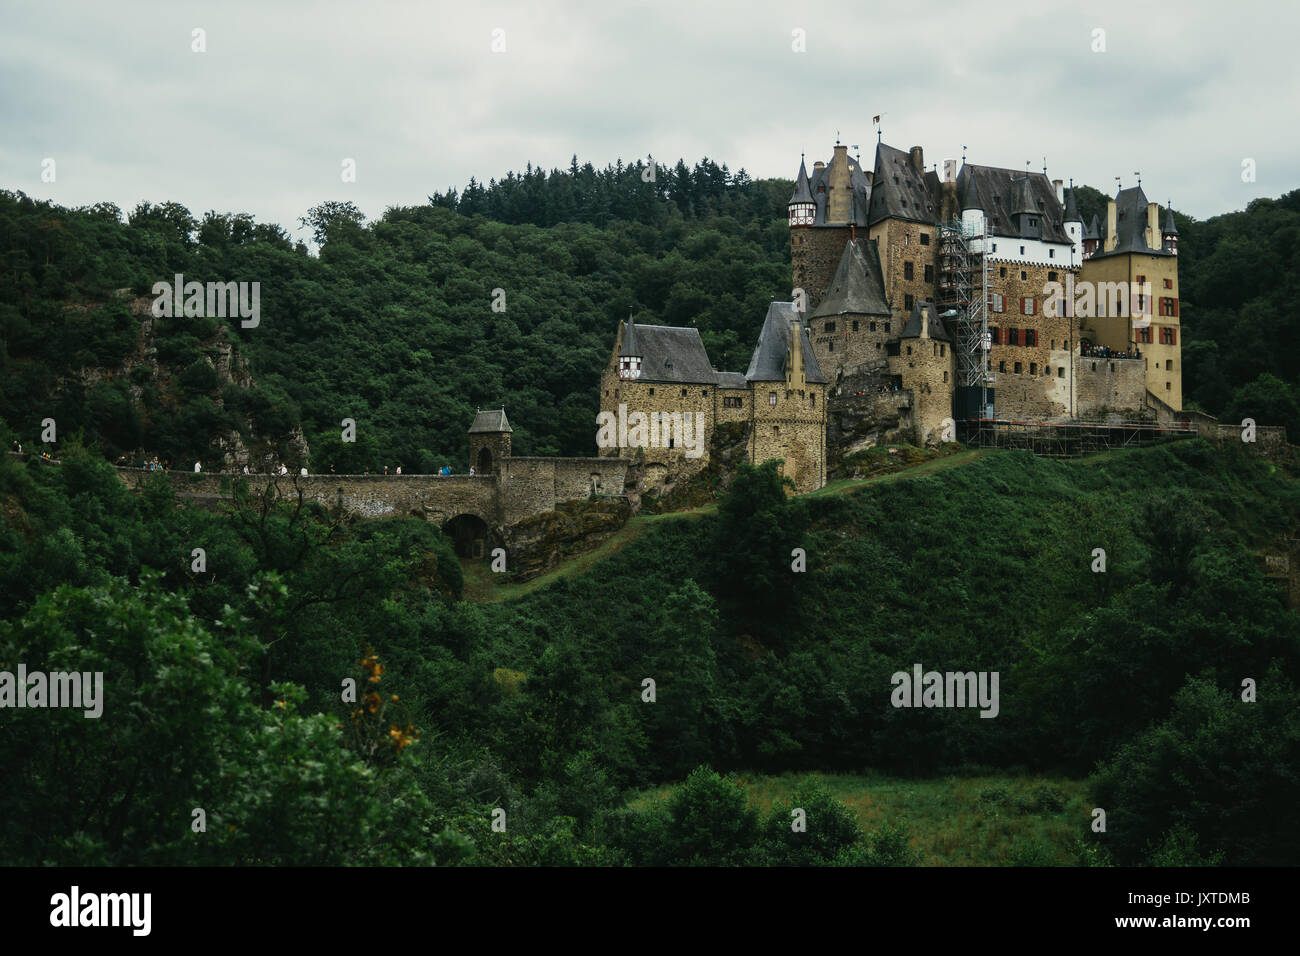 Burg Eltz medieval castle in Wierschem, Germany. Stock Photo